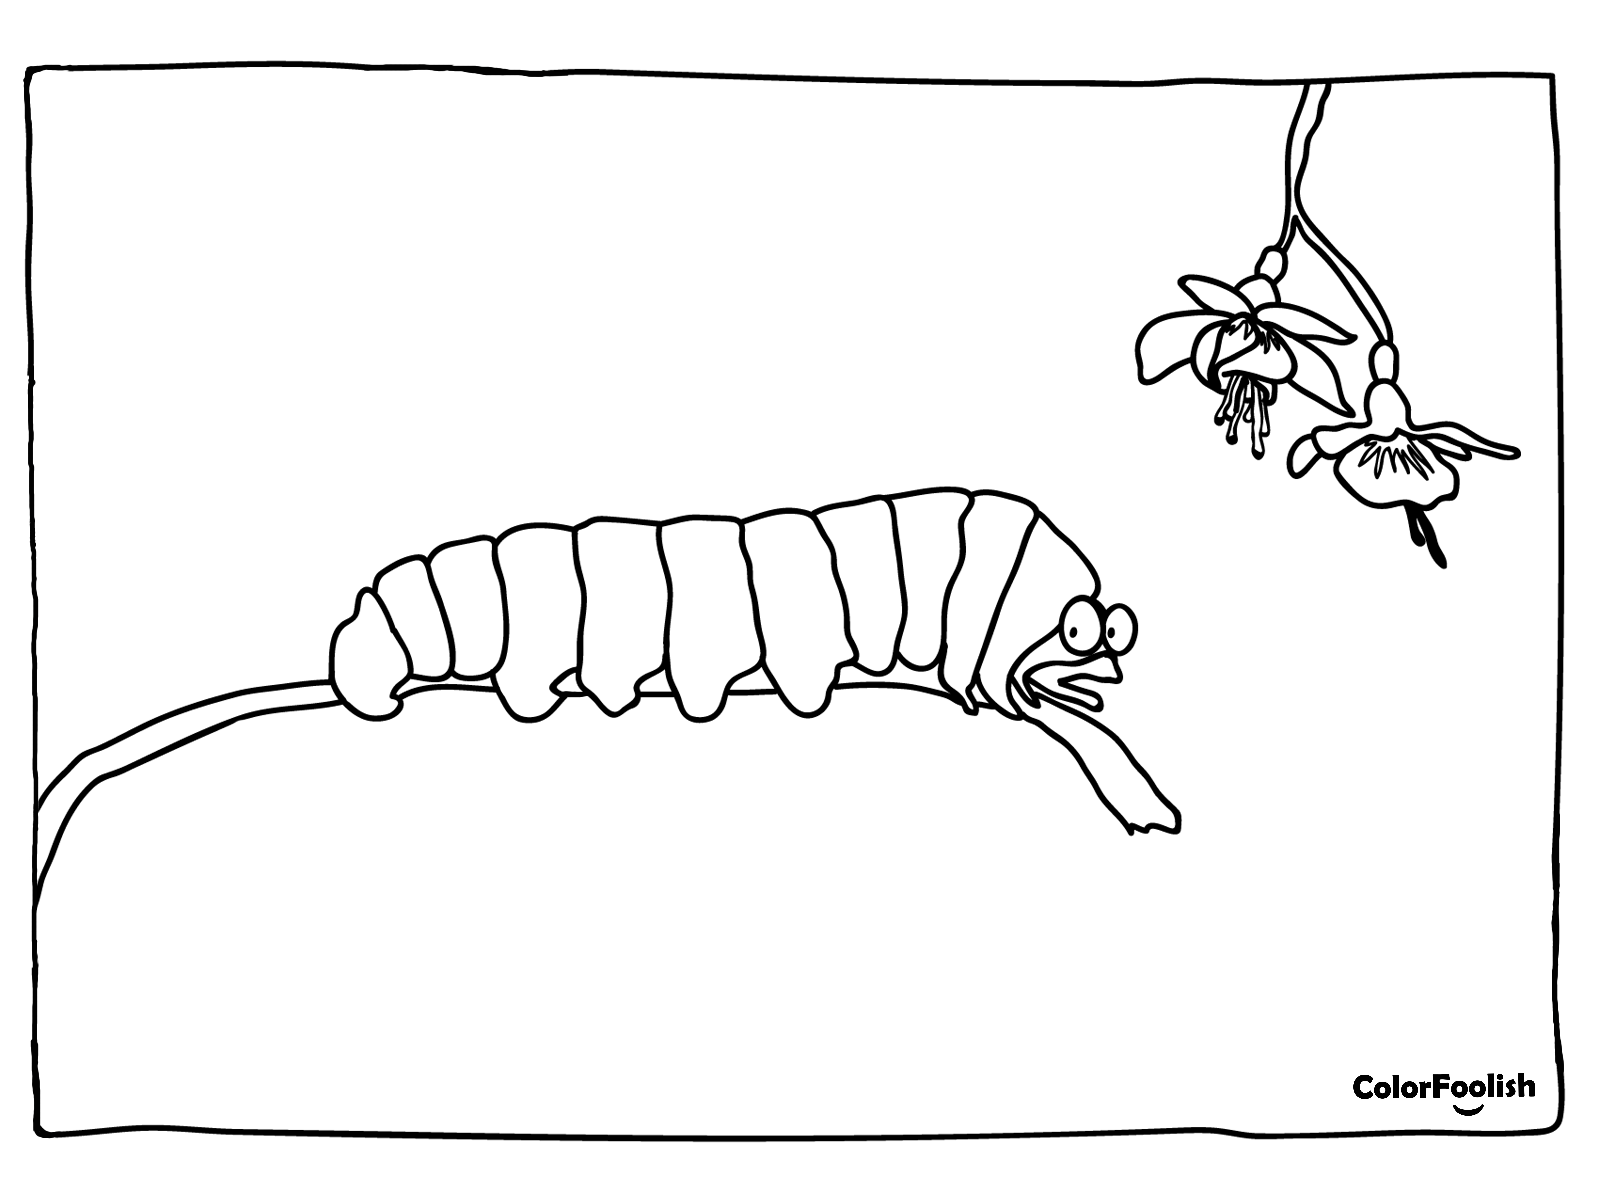 ໜ້າ ສີຂອງ caterpillar ຢູ່ສາຂາ